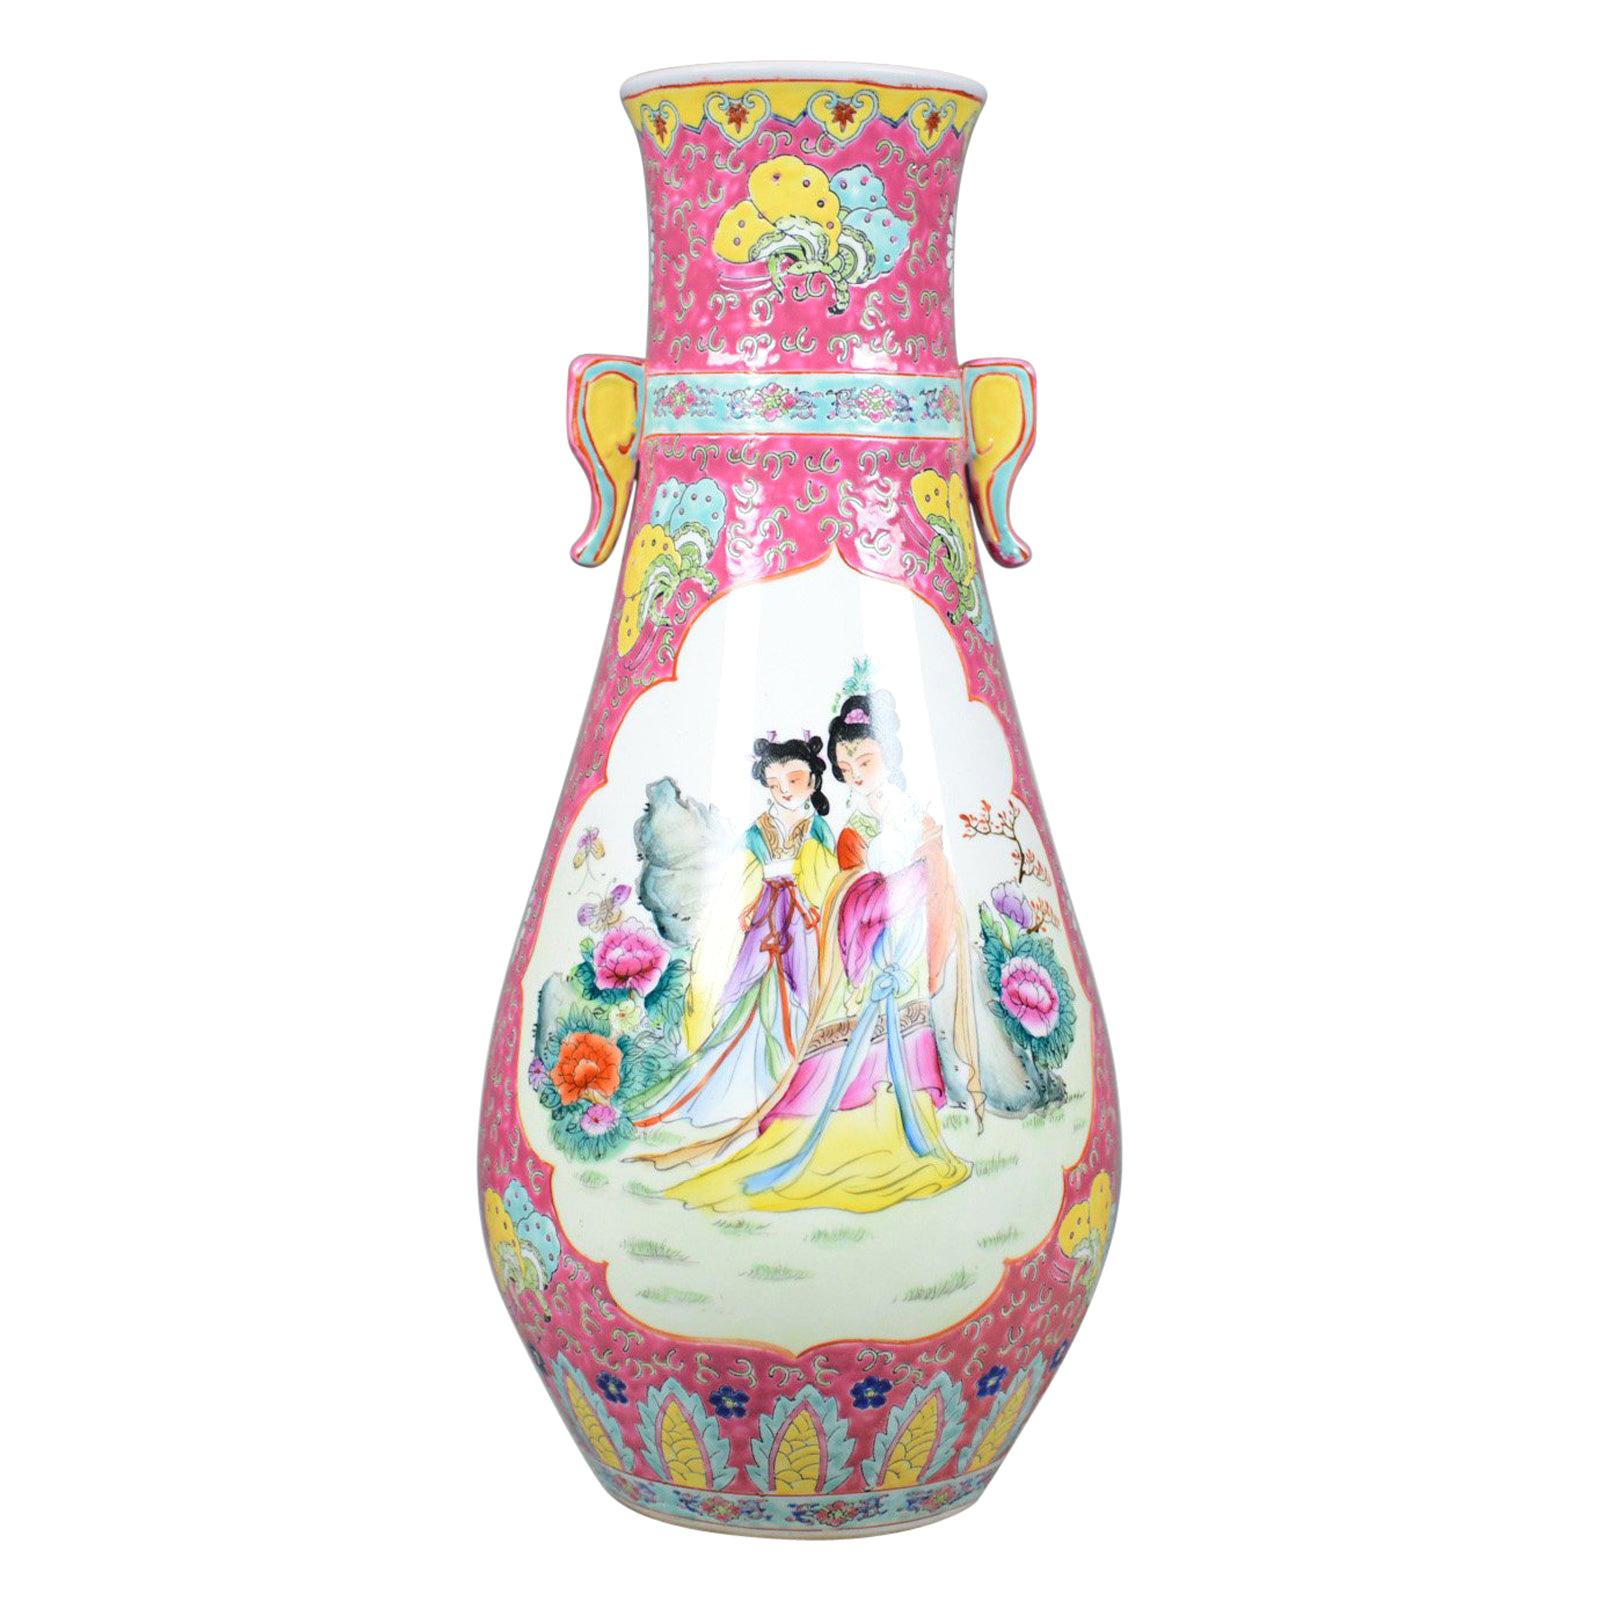 Large, Vintage, Japanese Baluster Vase, Decorative Oriental, Ceramic Urn